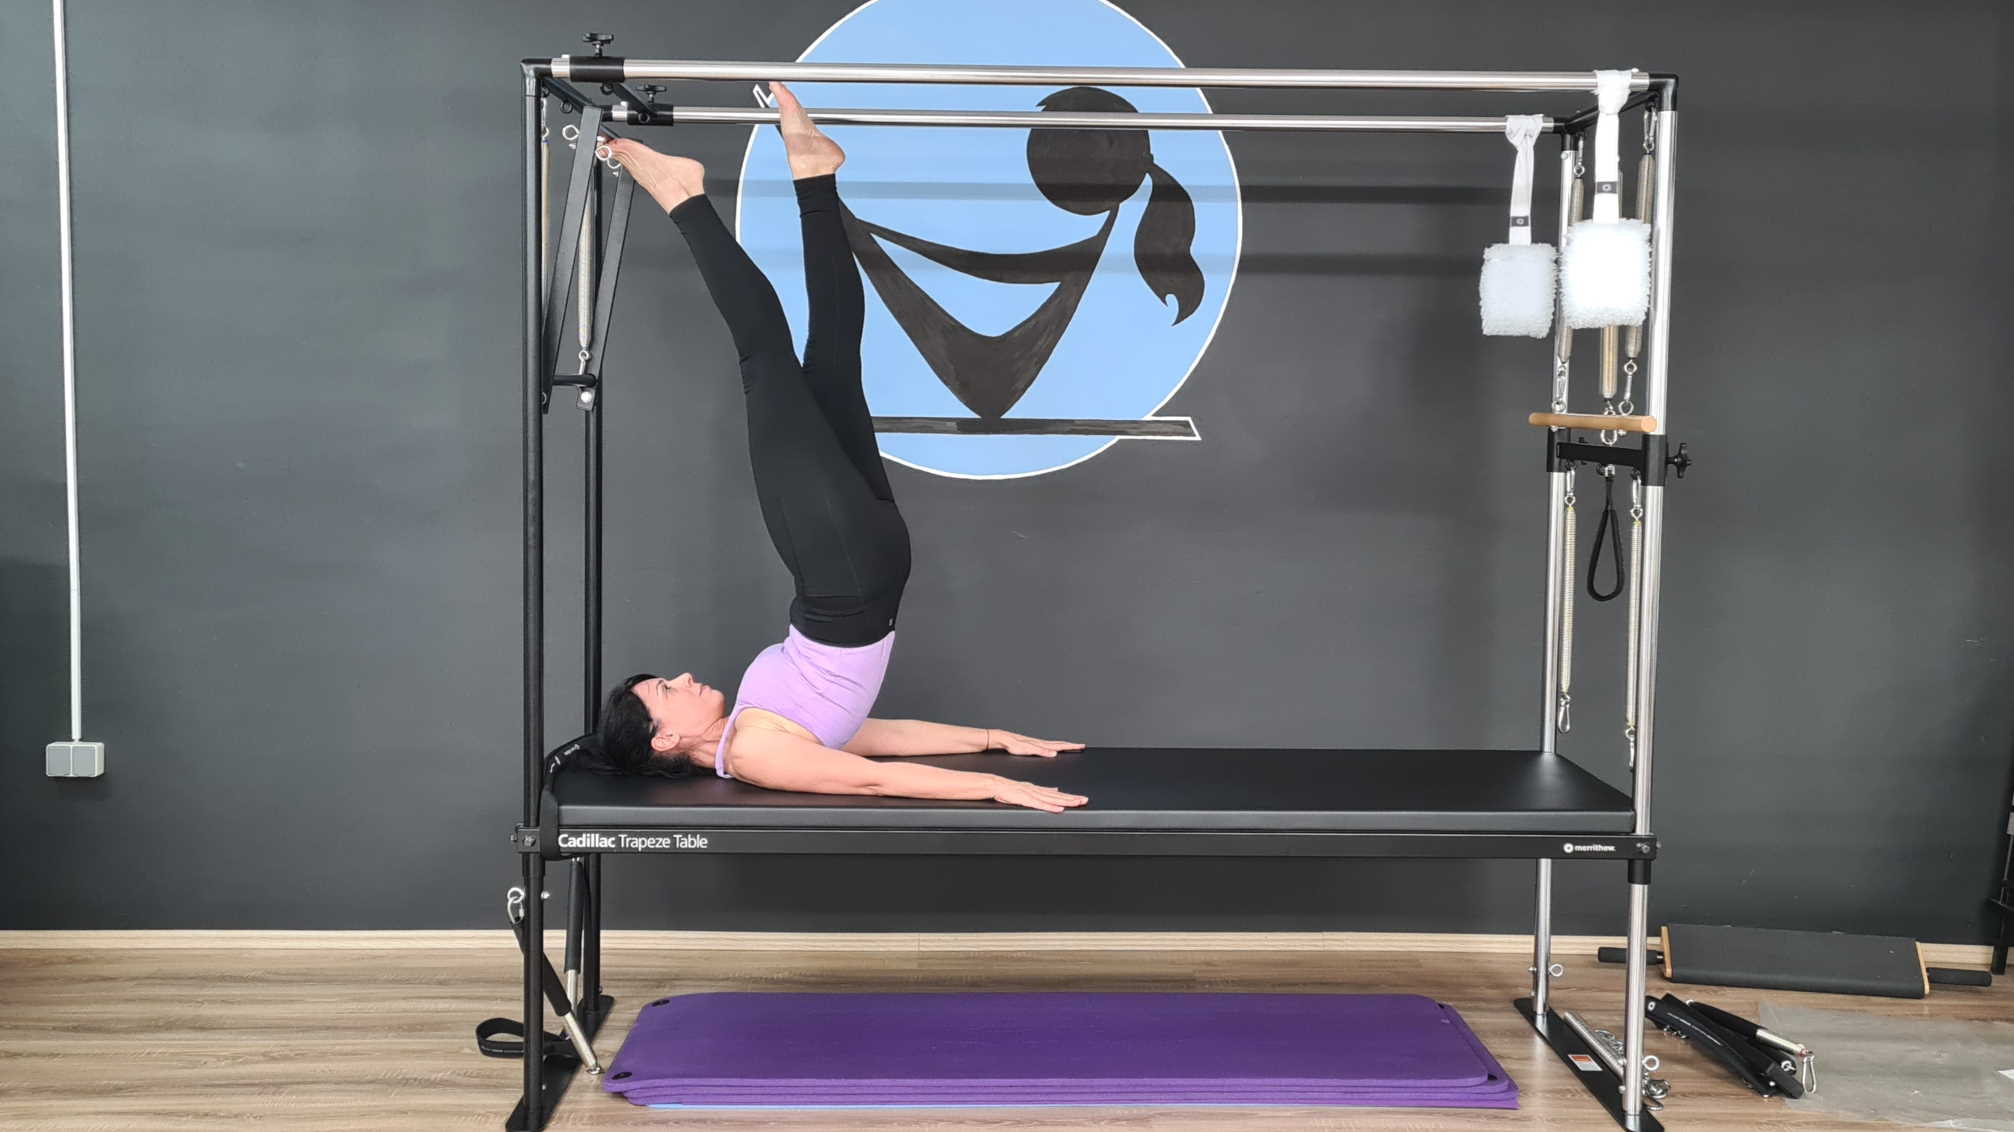 Pilatesom do zdravlja: možemo li vježbajući Pilates metodu ojačati mišiće trbuha?